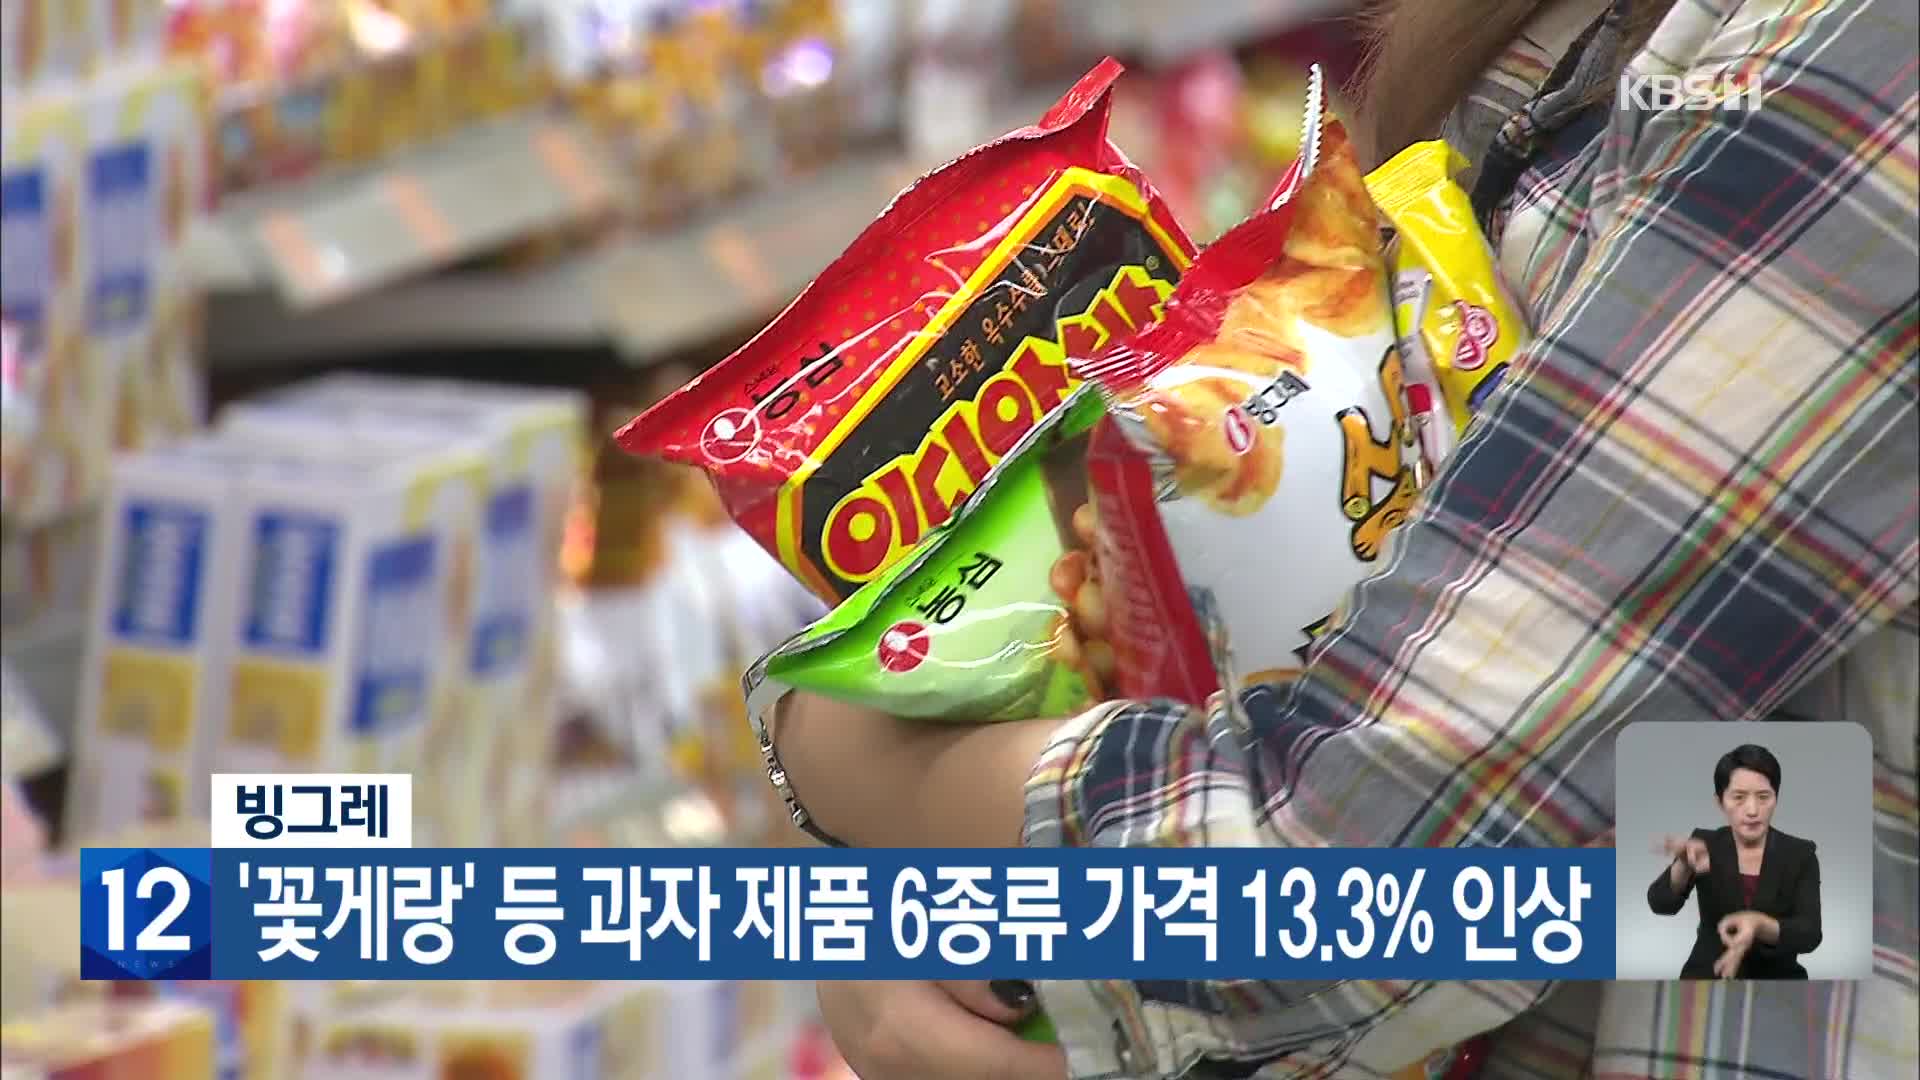 빙그레, ‘꽃게랑’ 등 과자 제품 6종류 가격 13.3% 인상